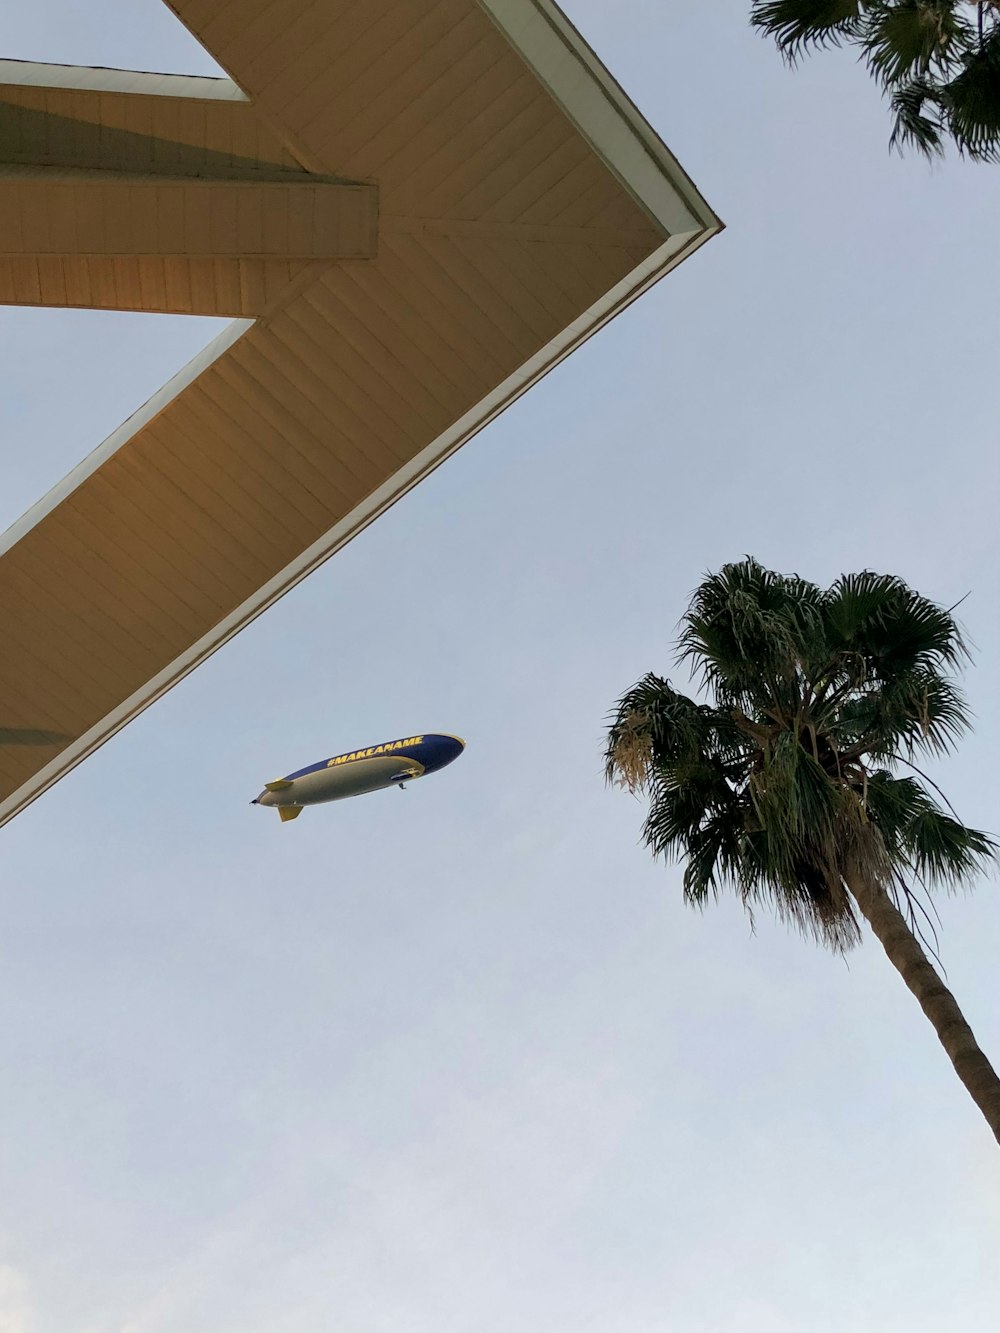 Un avion survolant un bâtiment